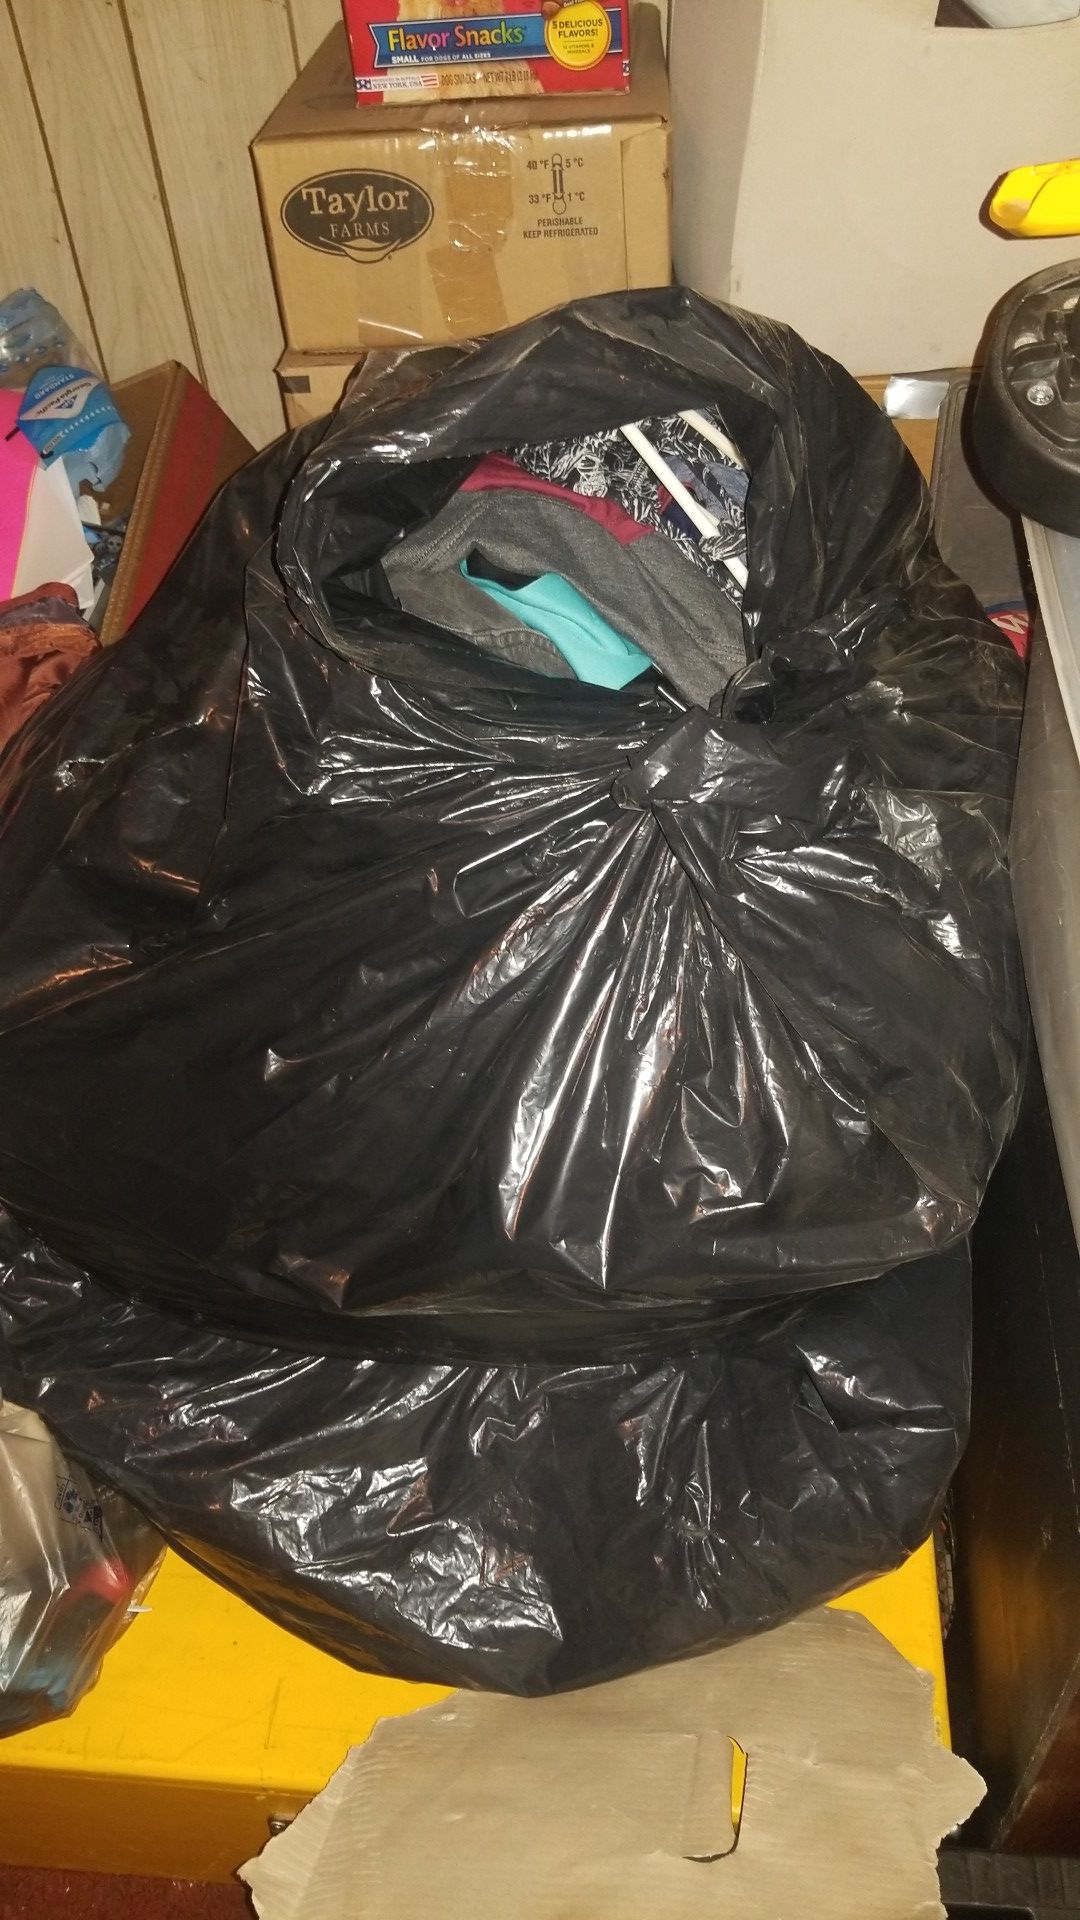 2 large garbage bag womens clothing